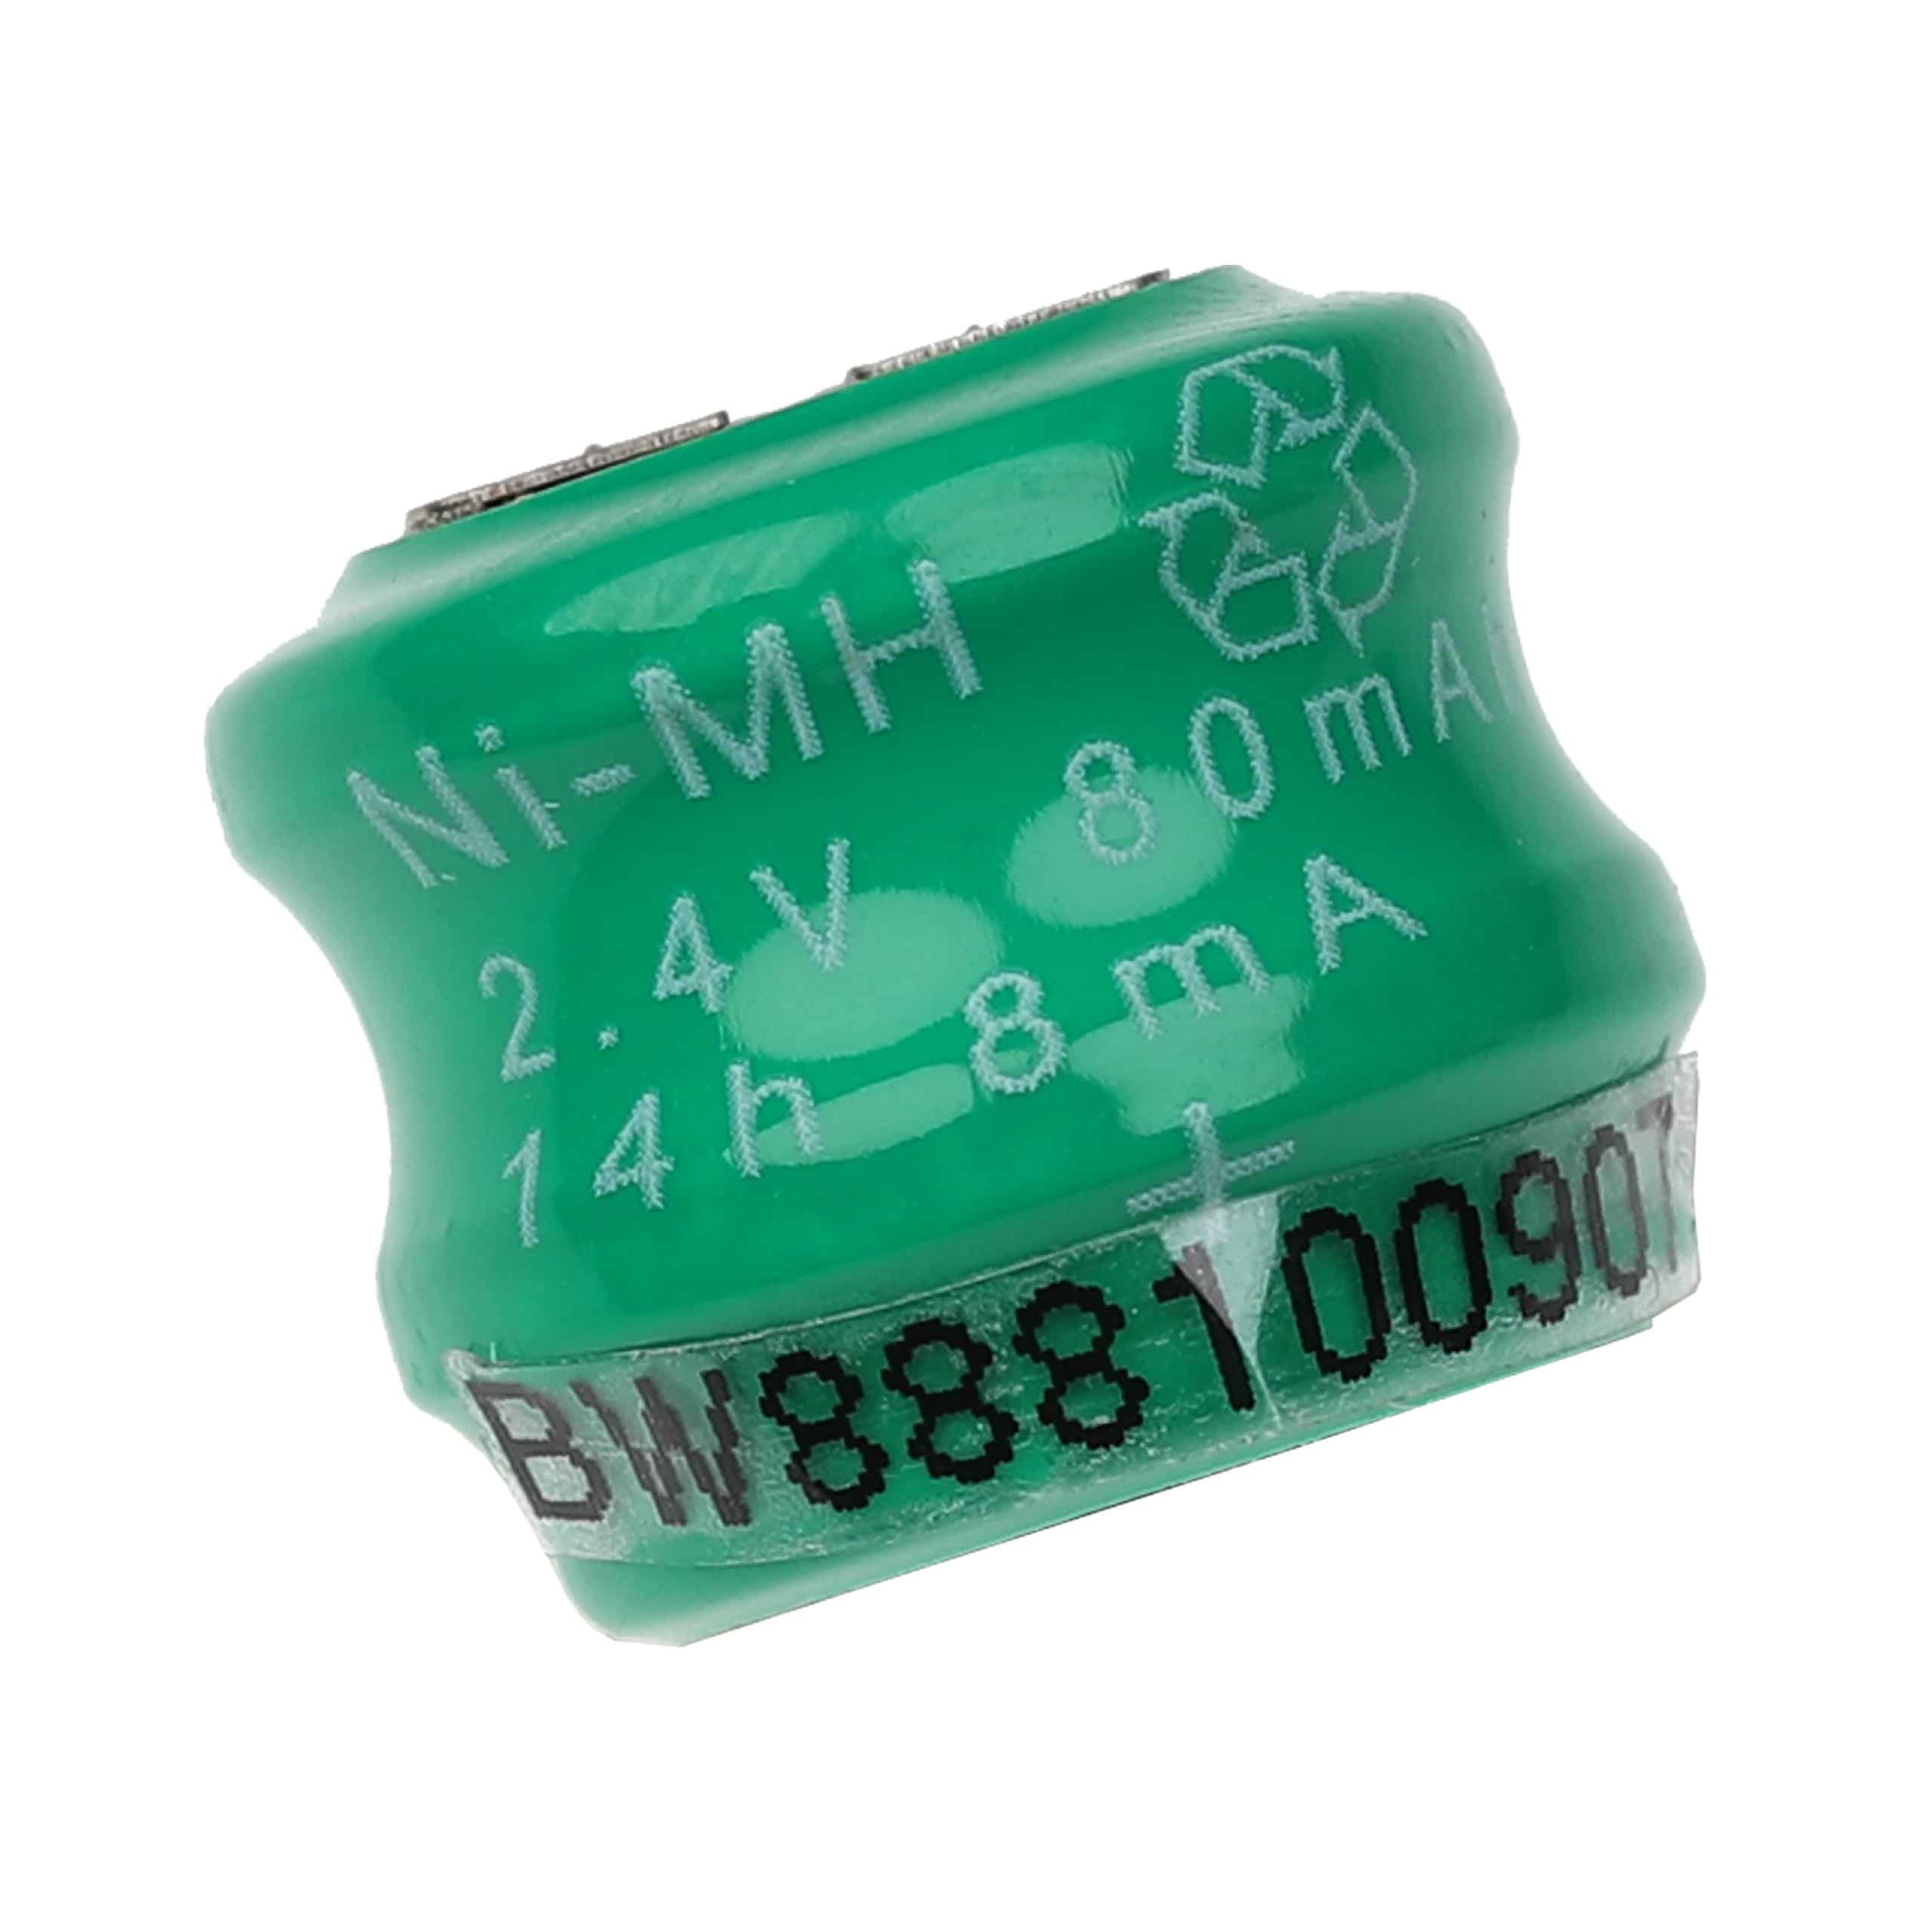 Batteria a bottone (2x cella) tipo V80H 3 pin sostituisce V80H per modellismo, luci solari ecc. 